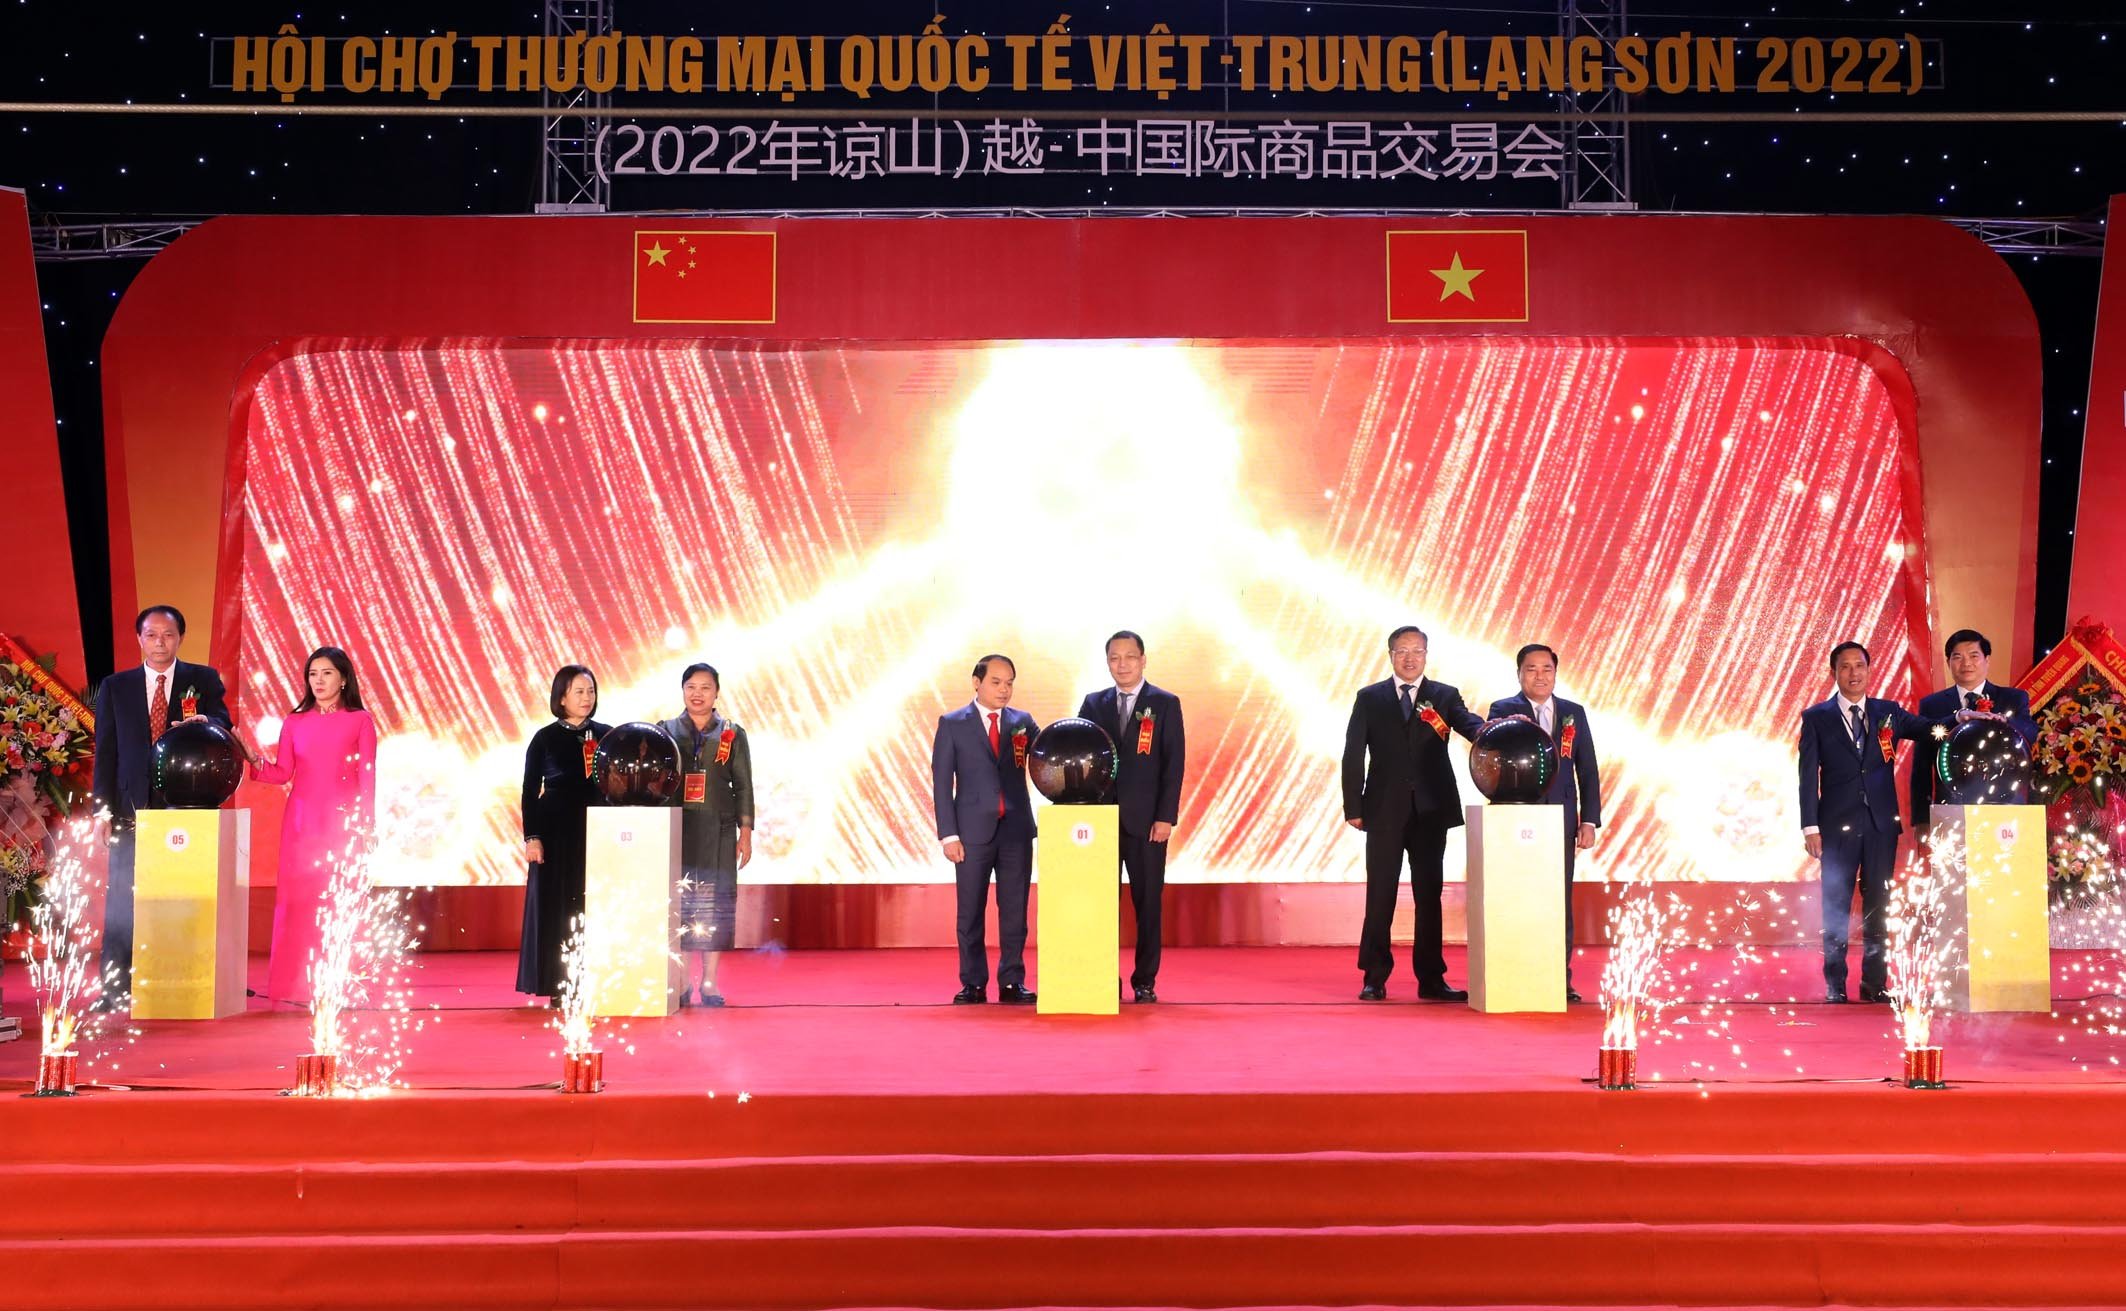 Nghi lễ Khai mạc Hội chợ Thương mại Quốc tế Việt – Trung